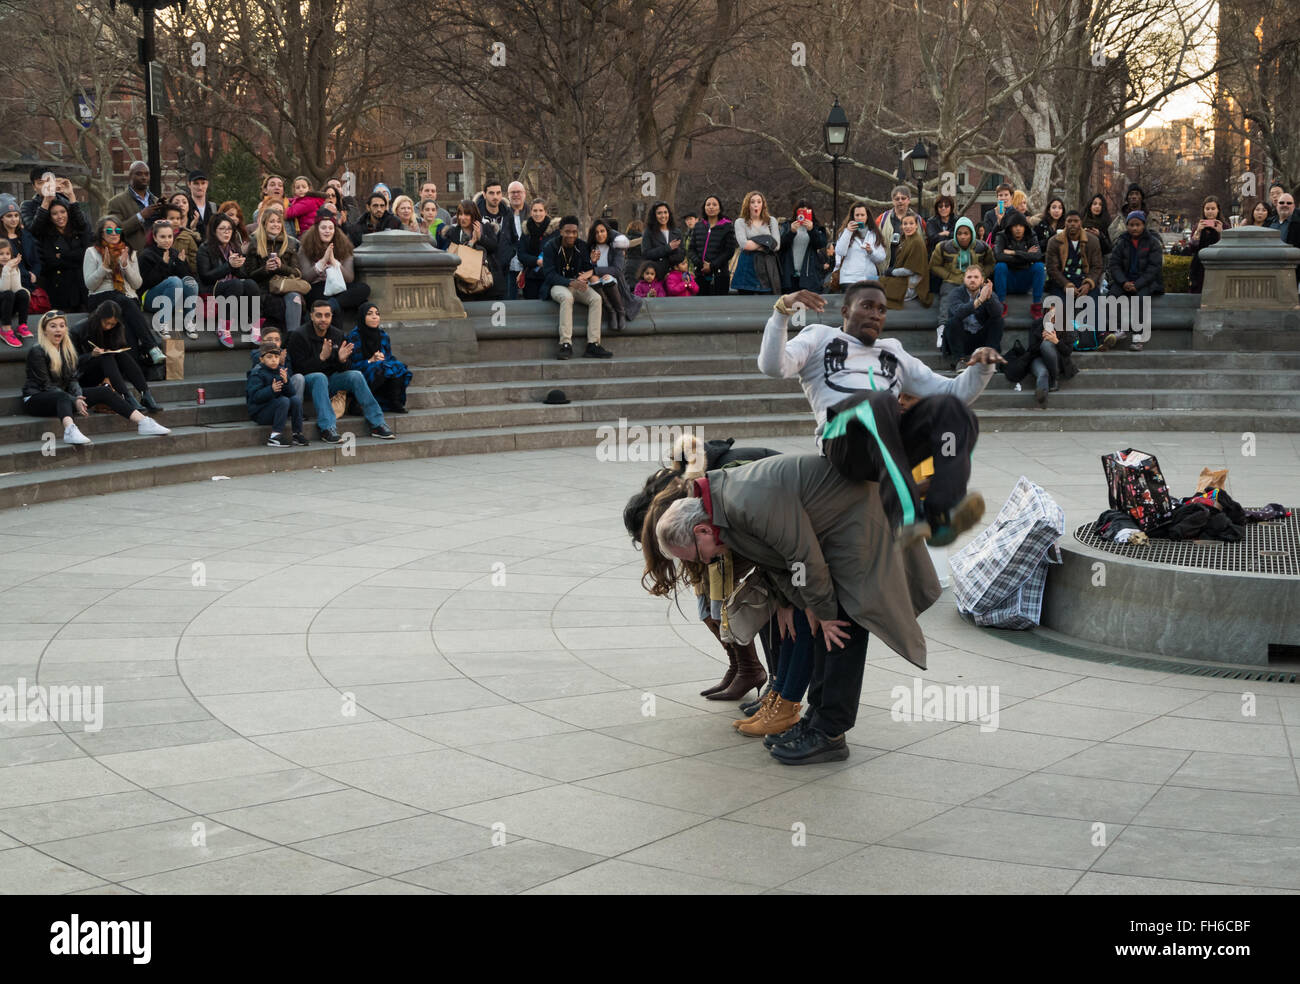 Performance de rue à Washington Square Park d'acrobat somersaulting plus de bénévoles avec des foules de spectateurs Banque D'Images